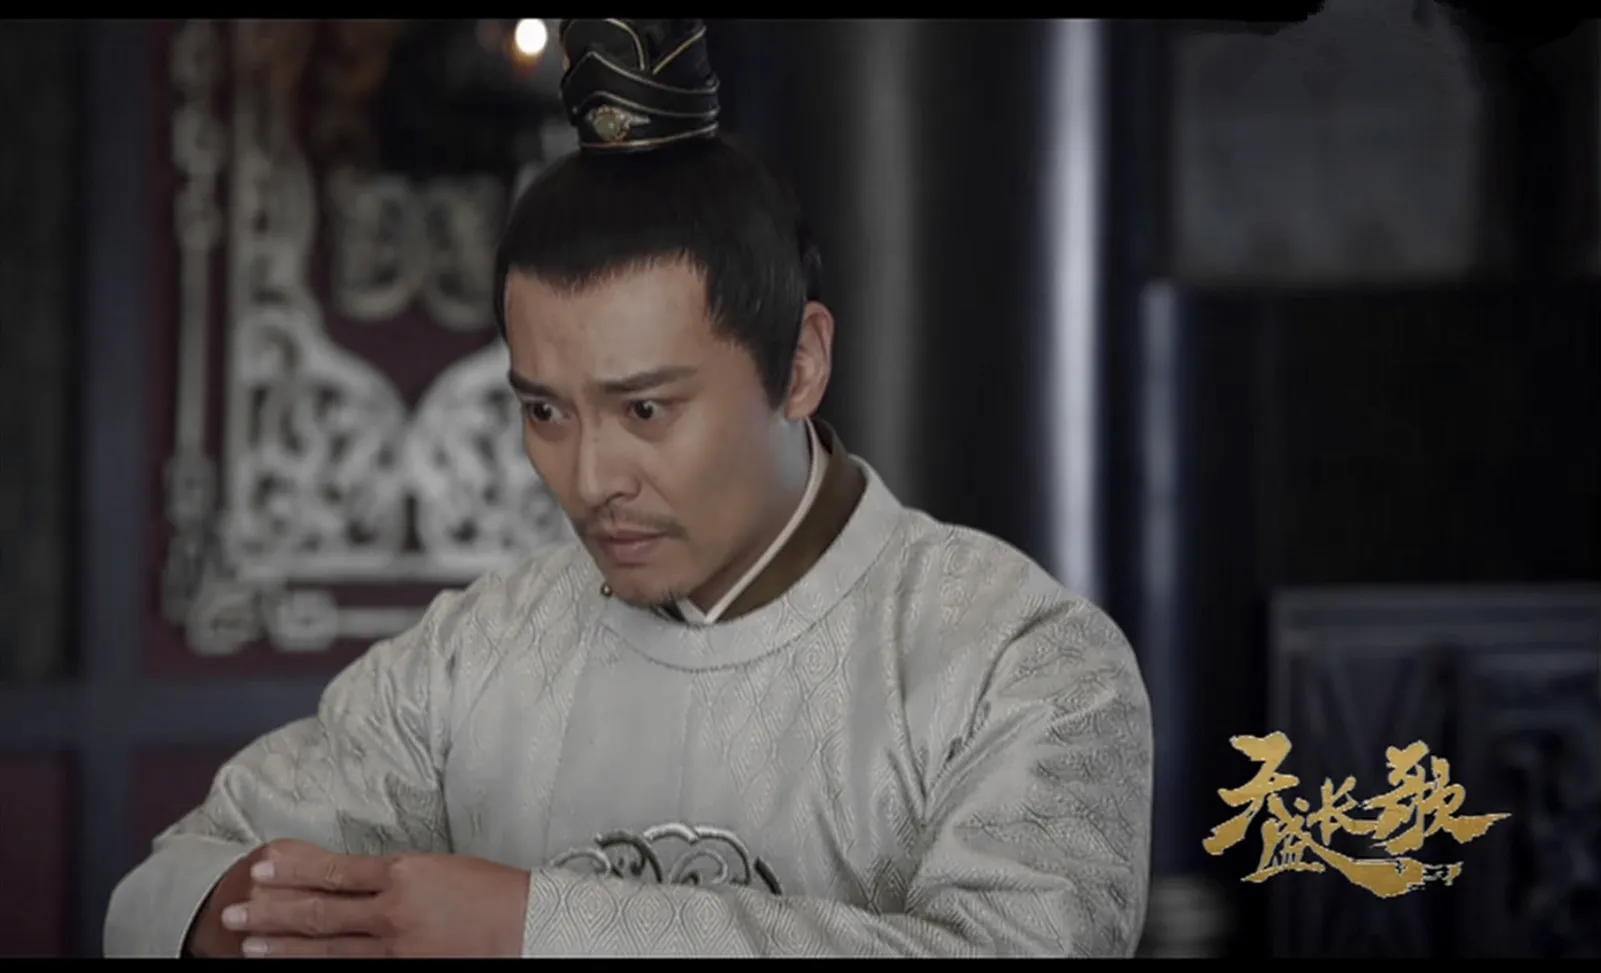 Cui Youbin plays chang zhongyi